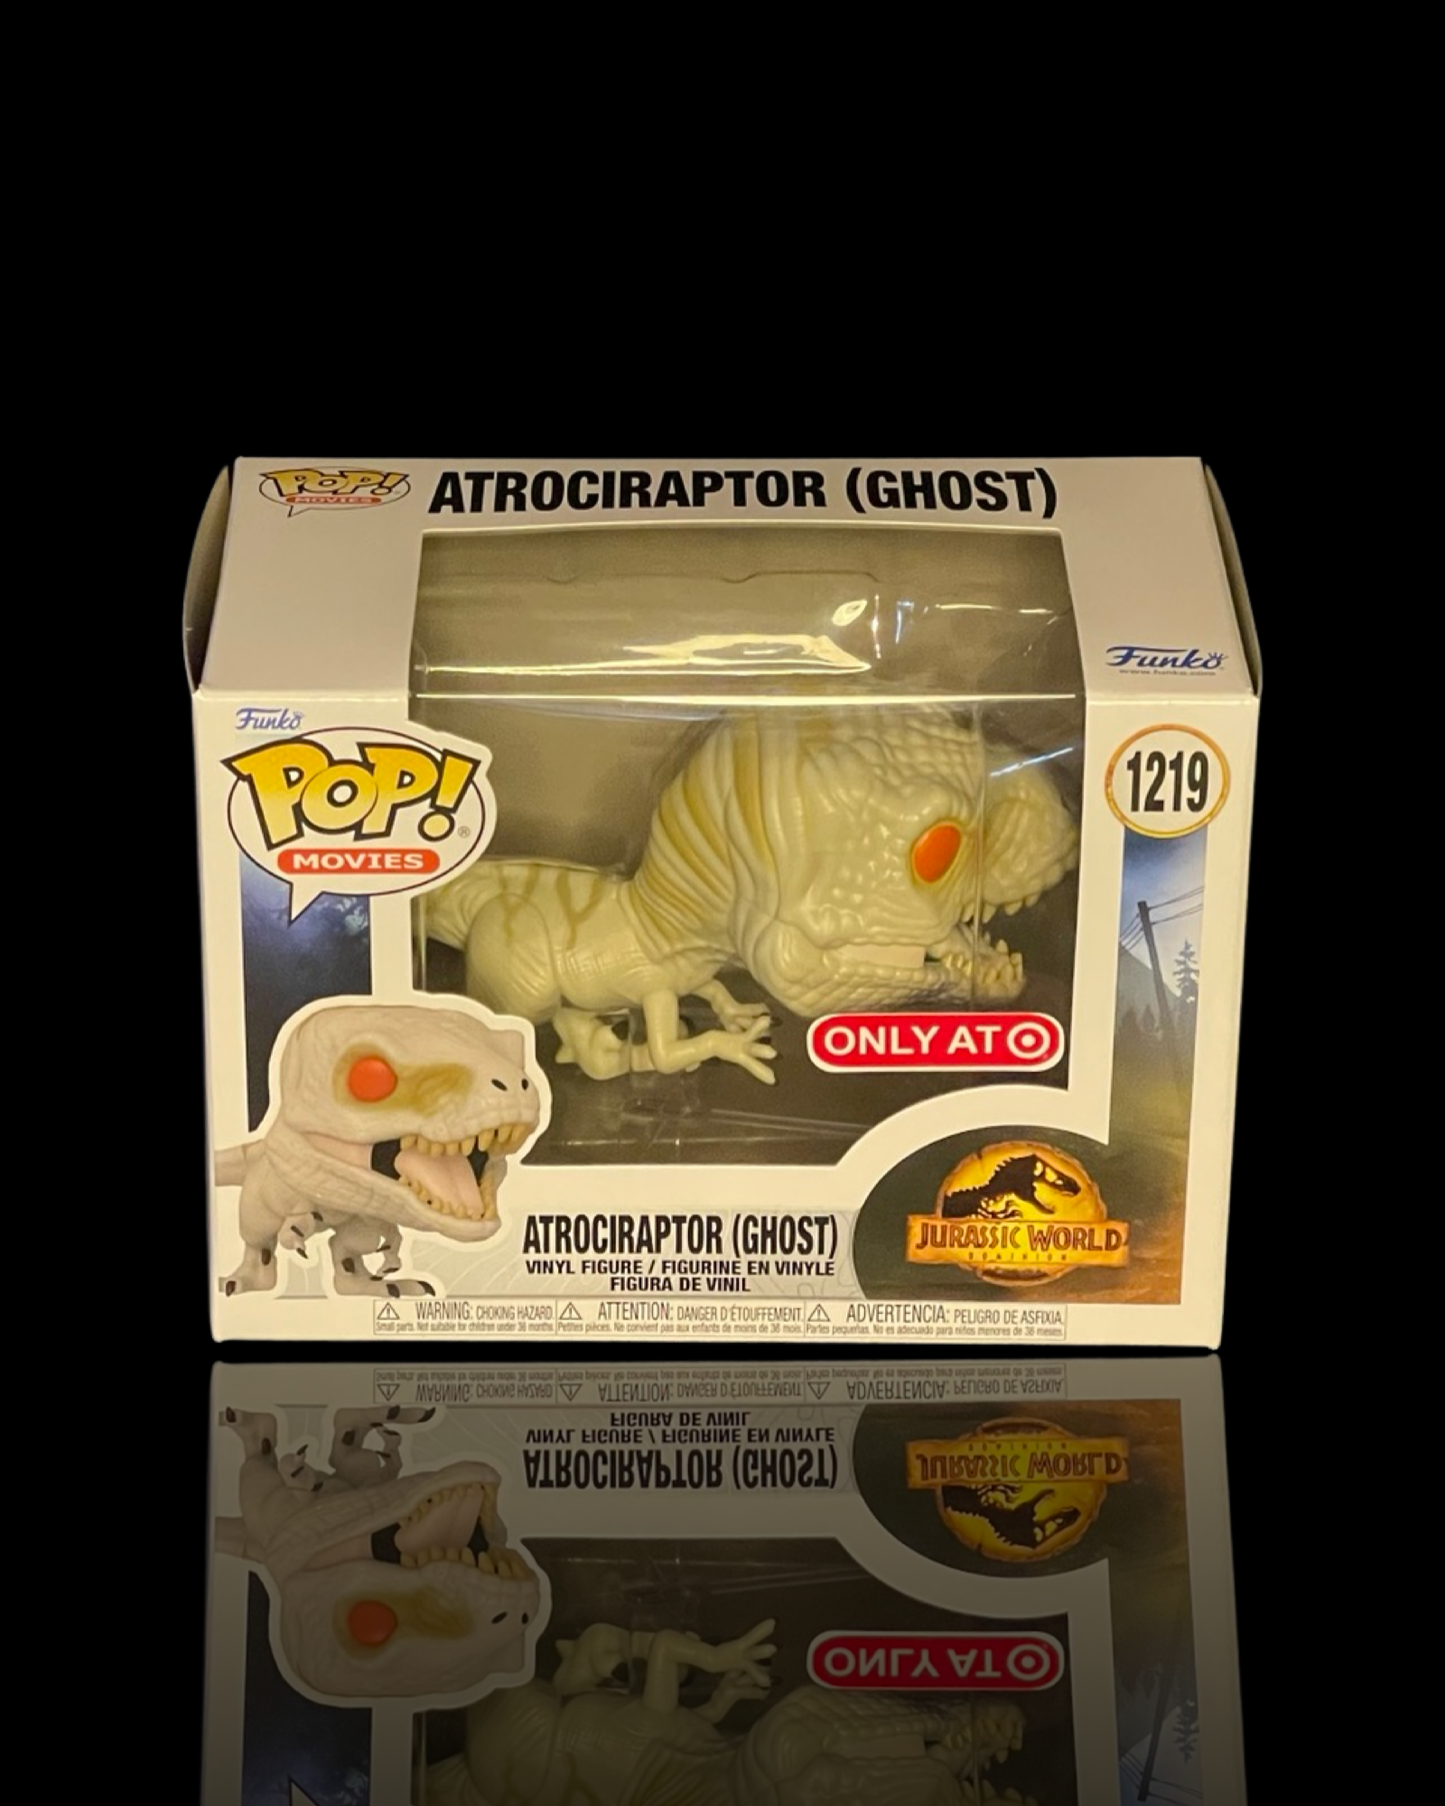 Jurassic World: Atrociraptor (Ghost) Target Exclusive